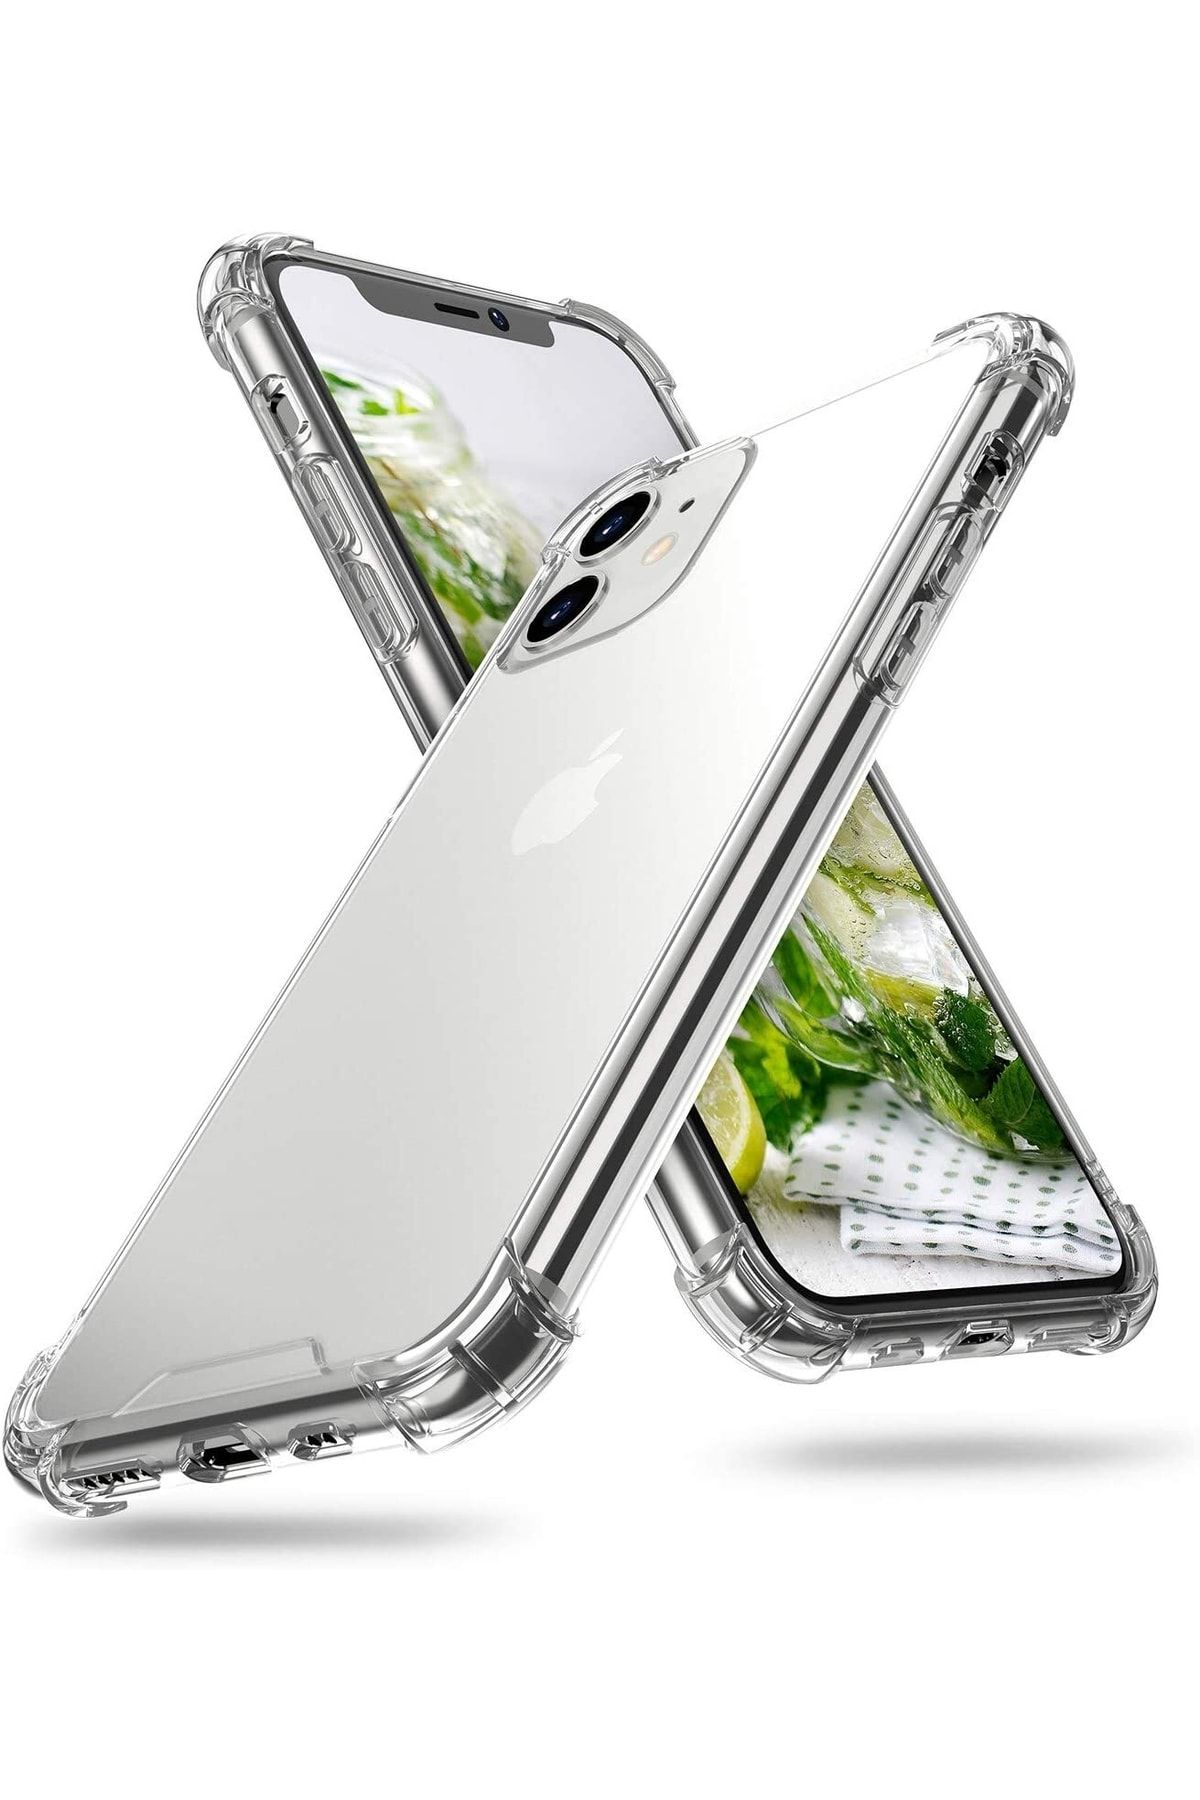 Canpay Iphone 11 Uyumlu Kılıf Şeffaf Köşe Korumalı Airbag Anti Şok Shockproof Silikon Darbe Korumalı